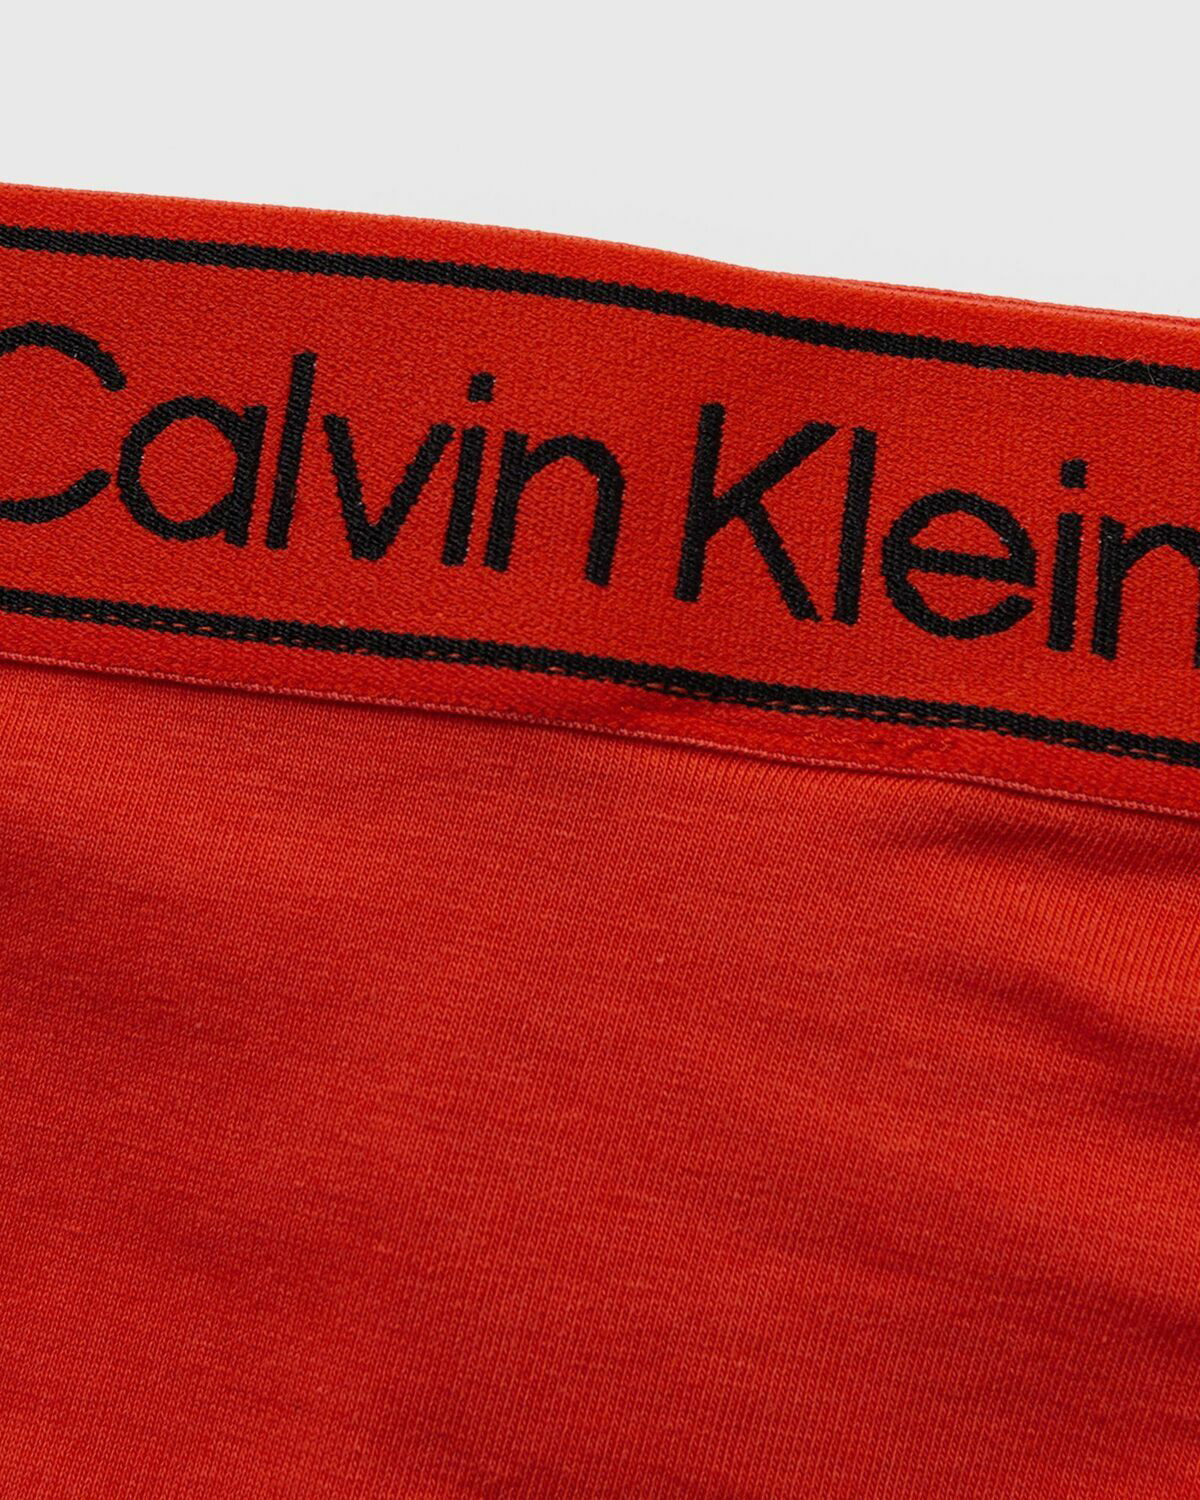 Calvin Klein Underwear WMNS STRING THONG Grey